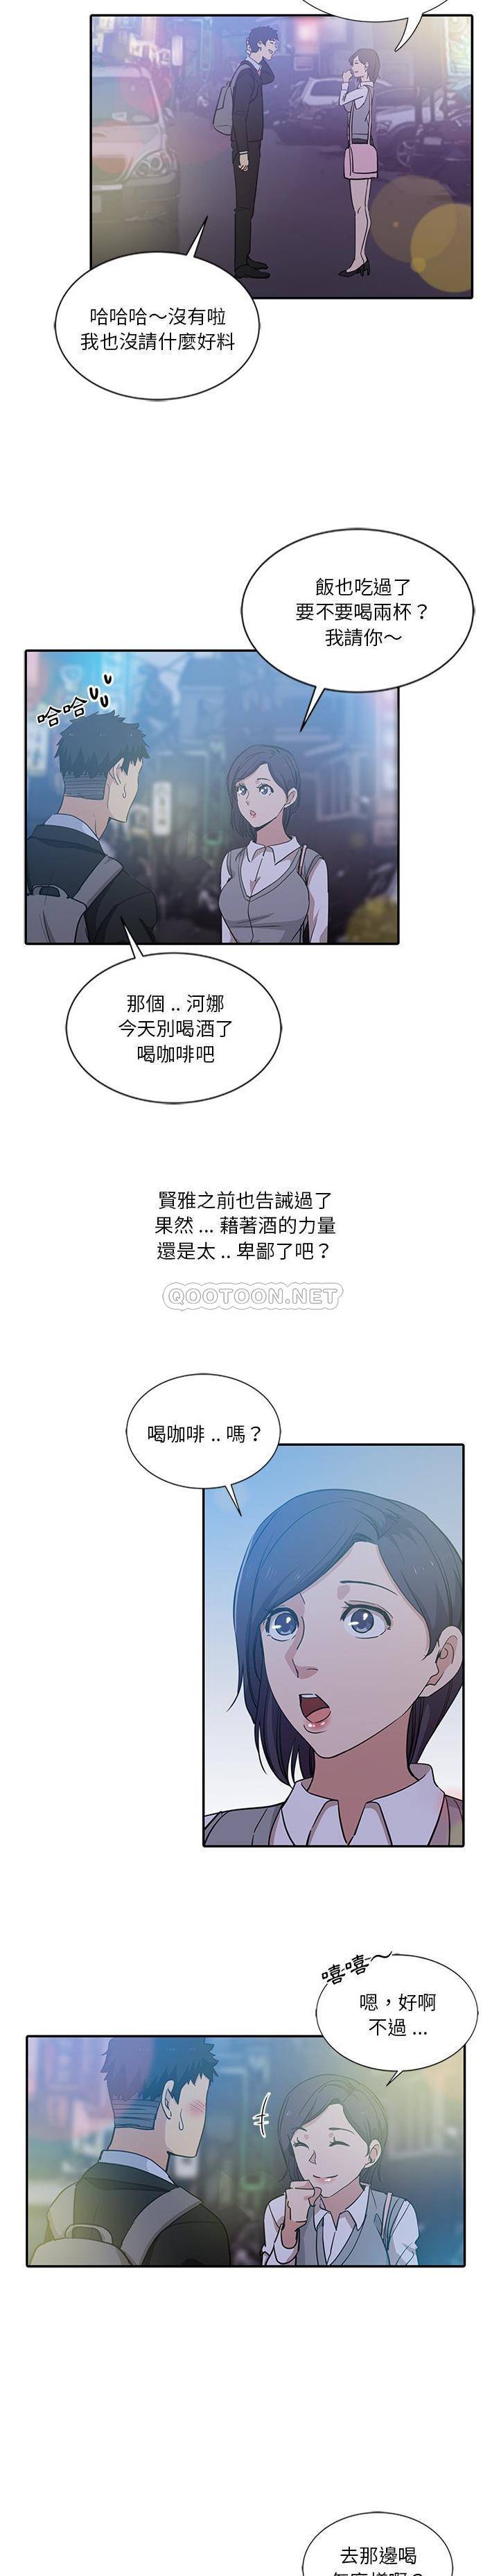 危险纯友谊  第8话 漫画图片3.jpg